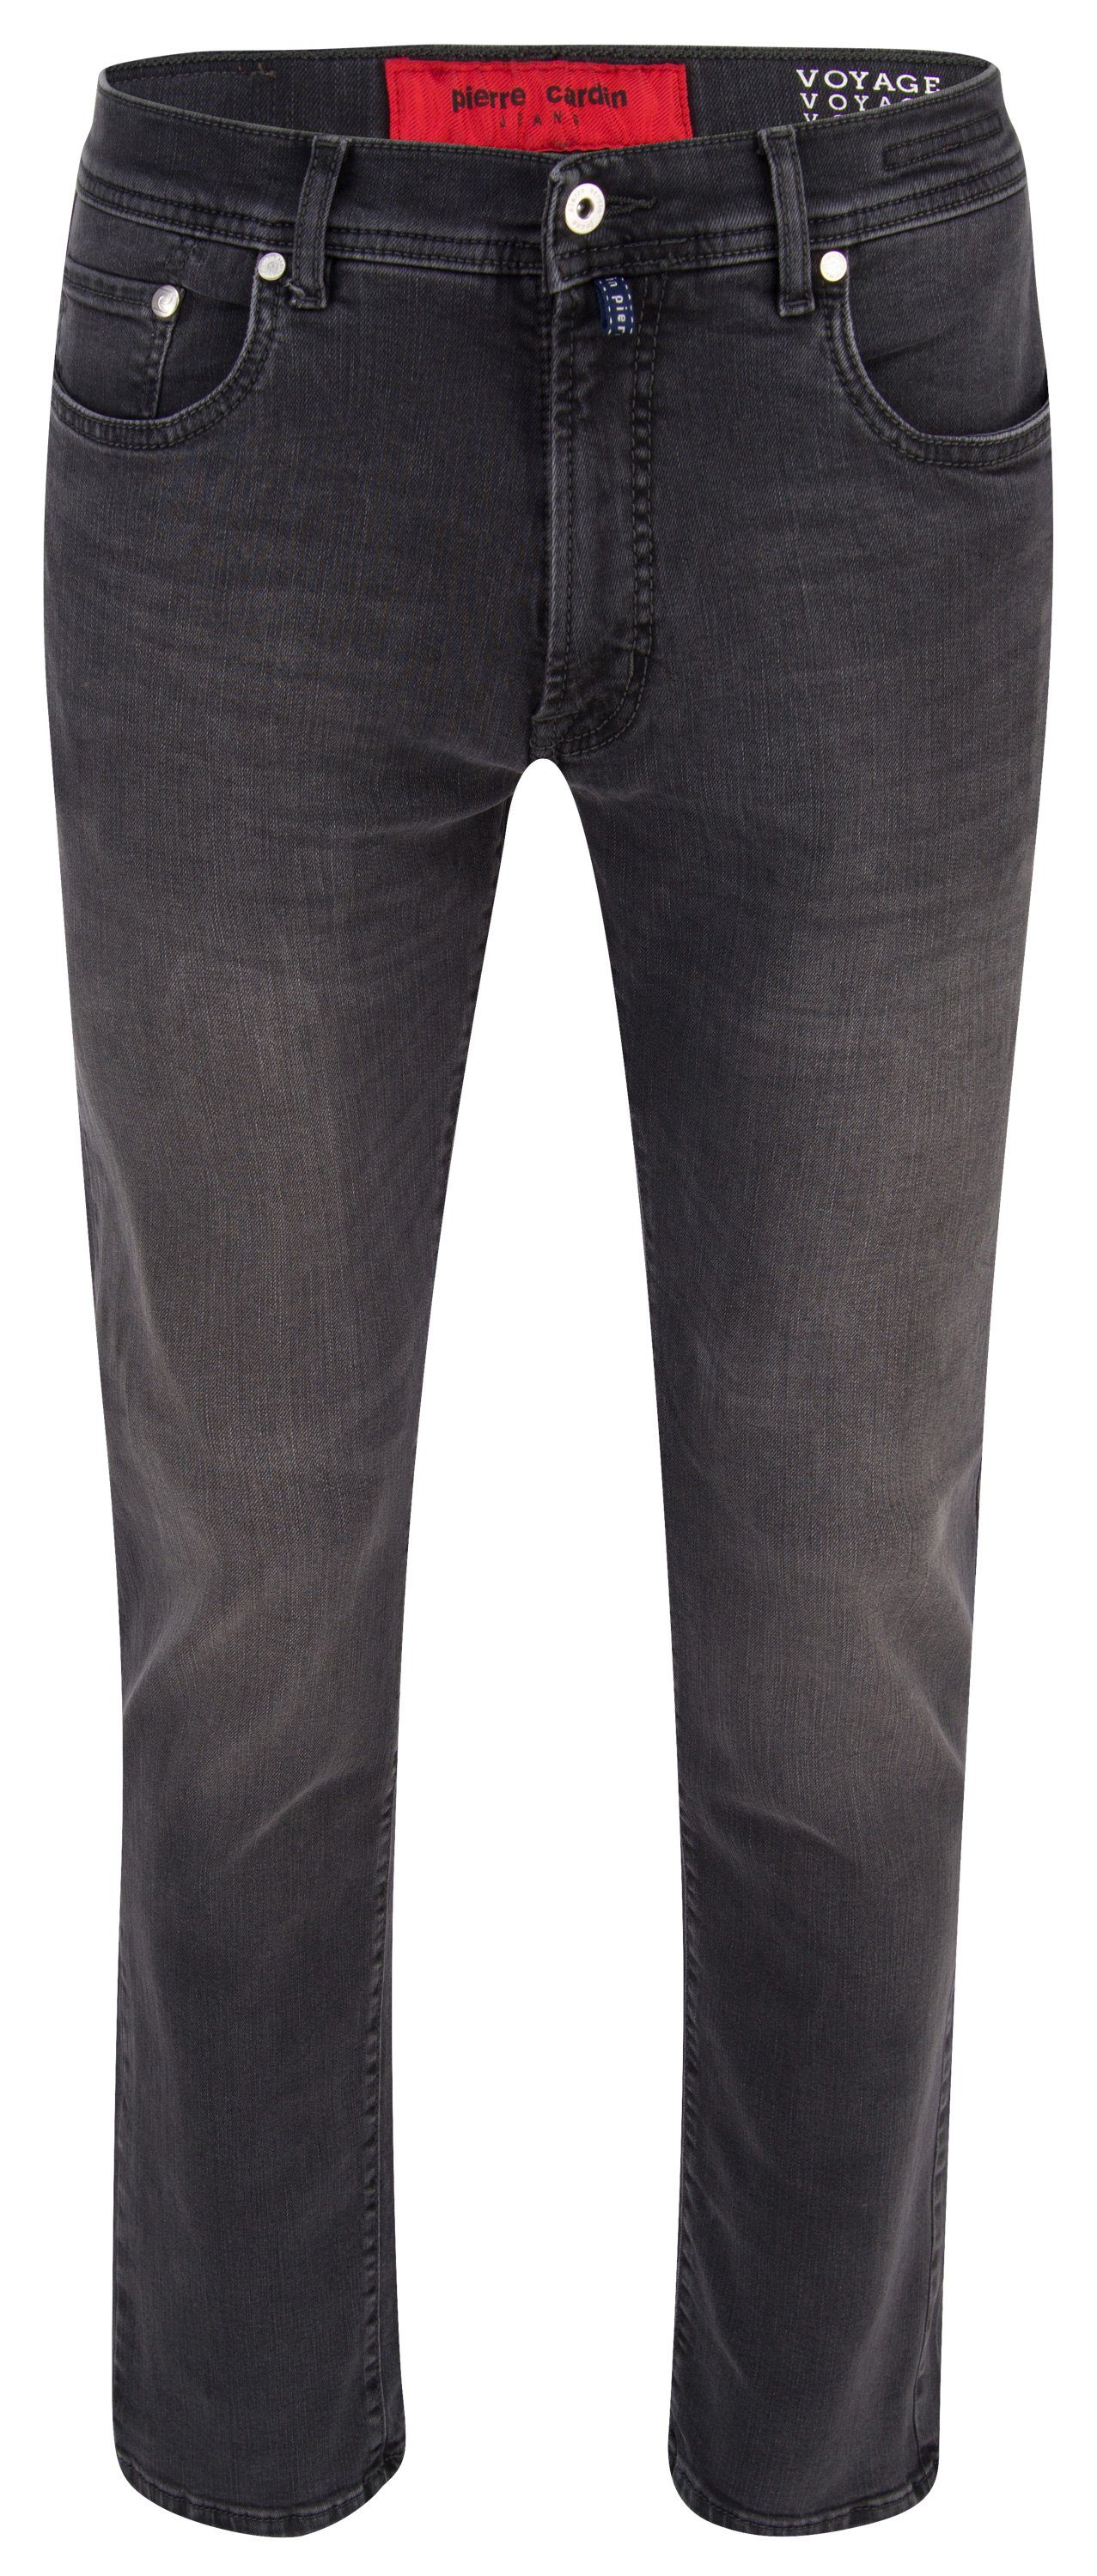 30915 VOYAGE 5-Pocket-Jeans CARDIN 7711.01 grey LYON - Cardin dark Pierre used PIERRE